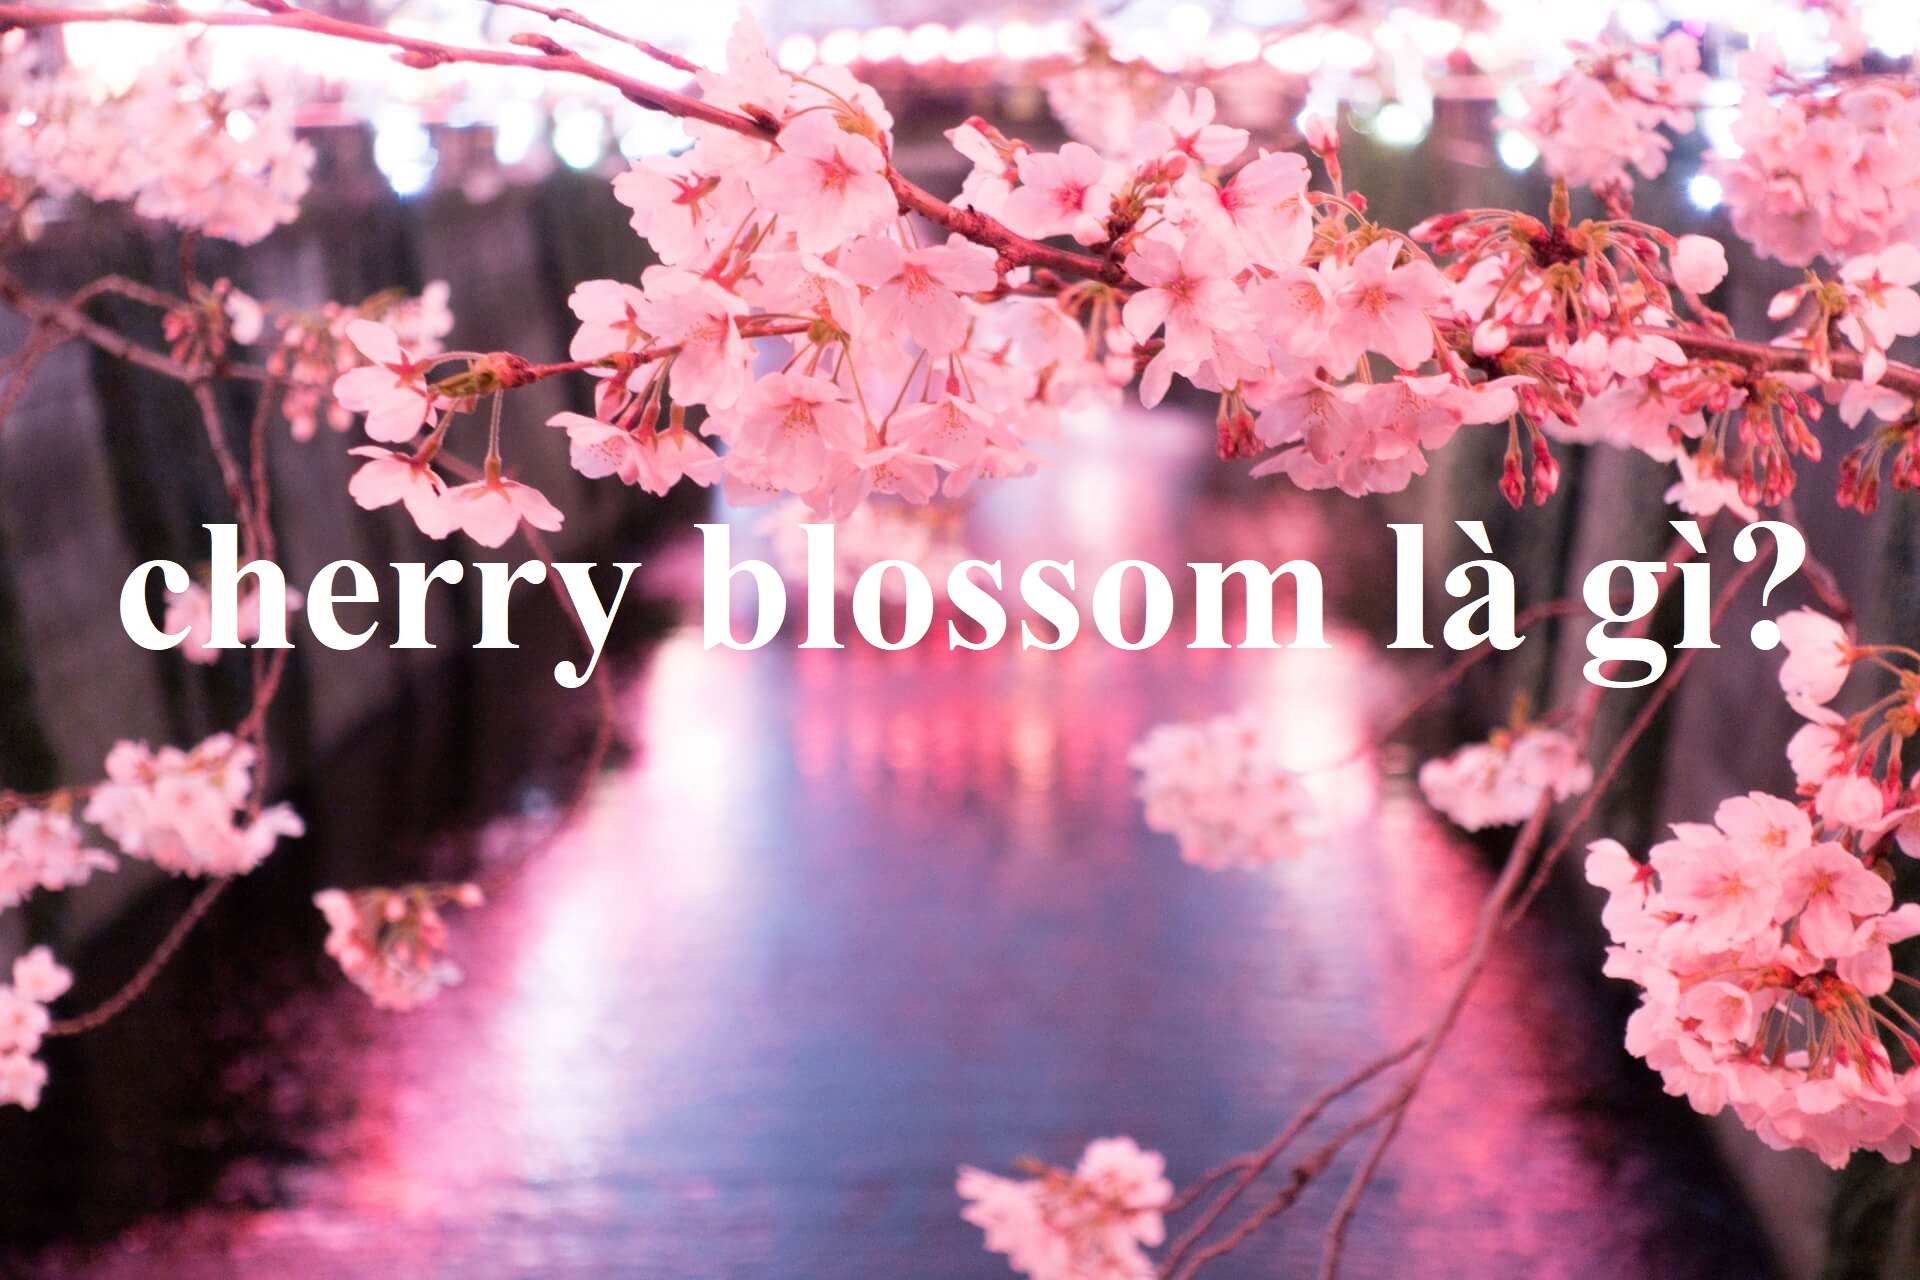 cherry blossom là gì